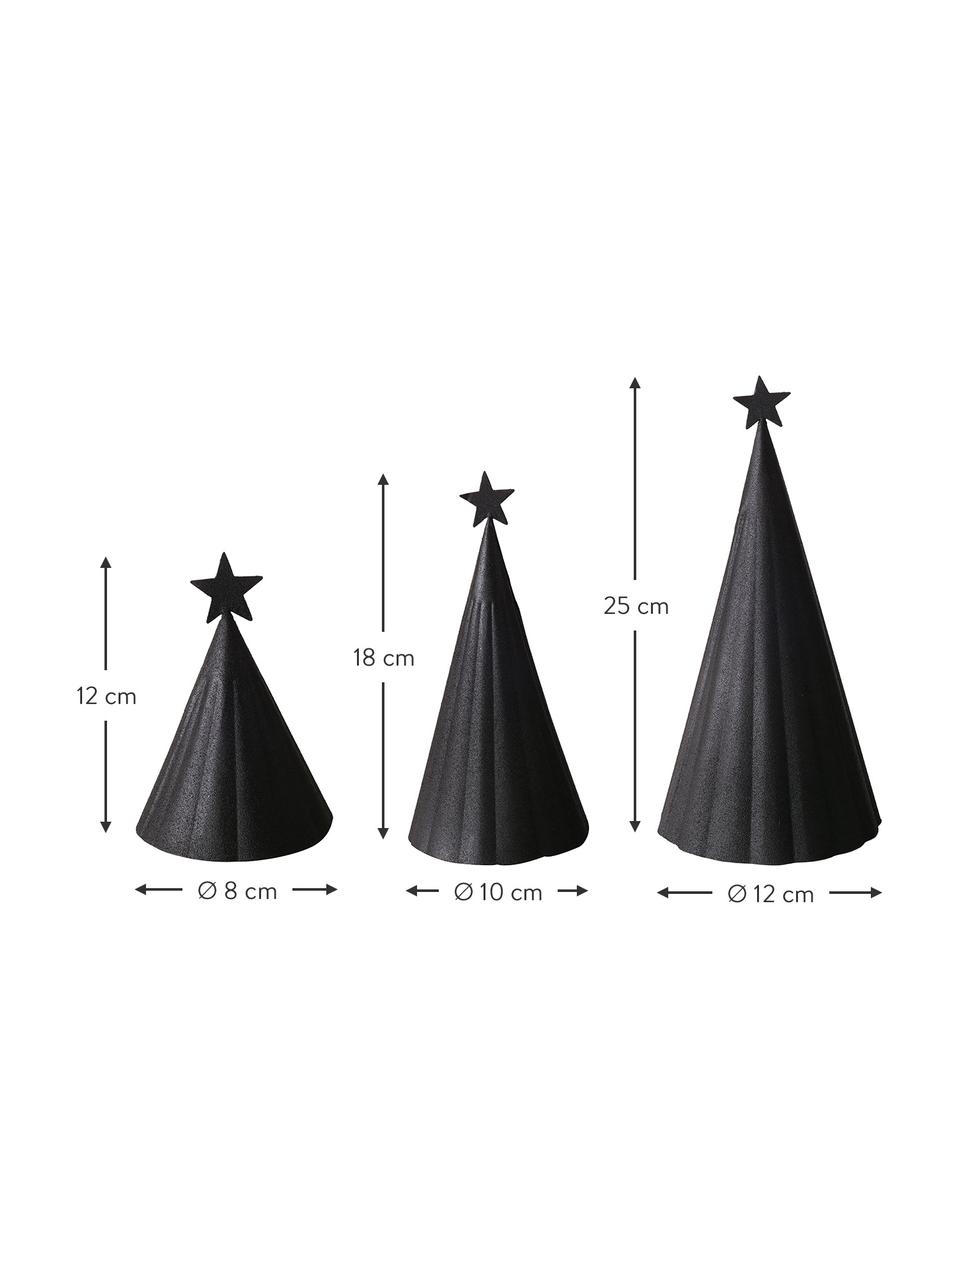 Deko-Weihnachtsbäume-Set Vassi, 3-tlg., Metall, pulverbeschichtet, schwarz, Set mit verschiedenen Grössen